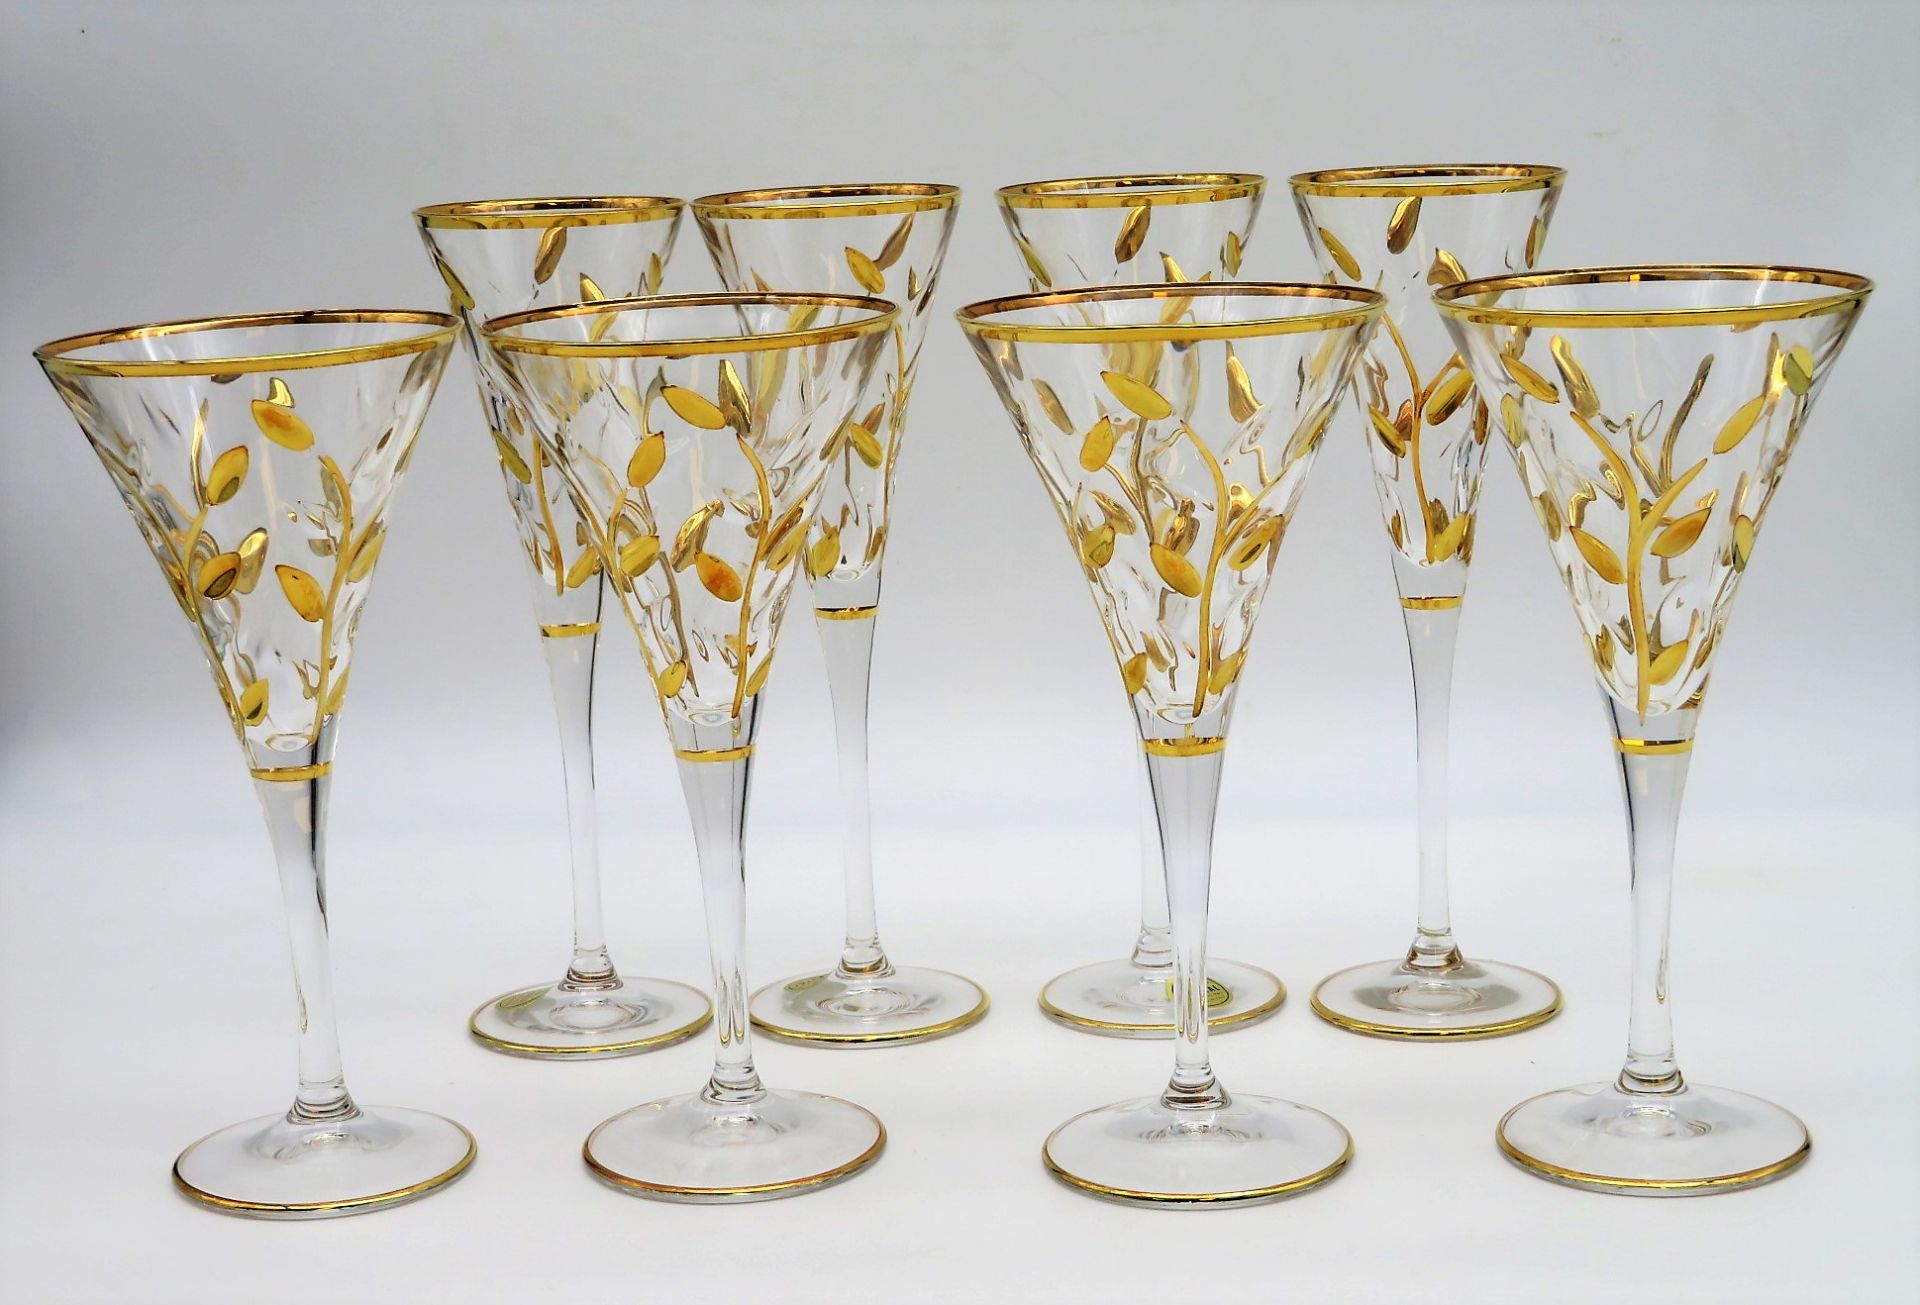 4 Sektgläser und 4 Sektkelche, Italien, farbloses Kristallglas mit reliefiertem Dekor von Blattwerk - Bild 2 aus 2